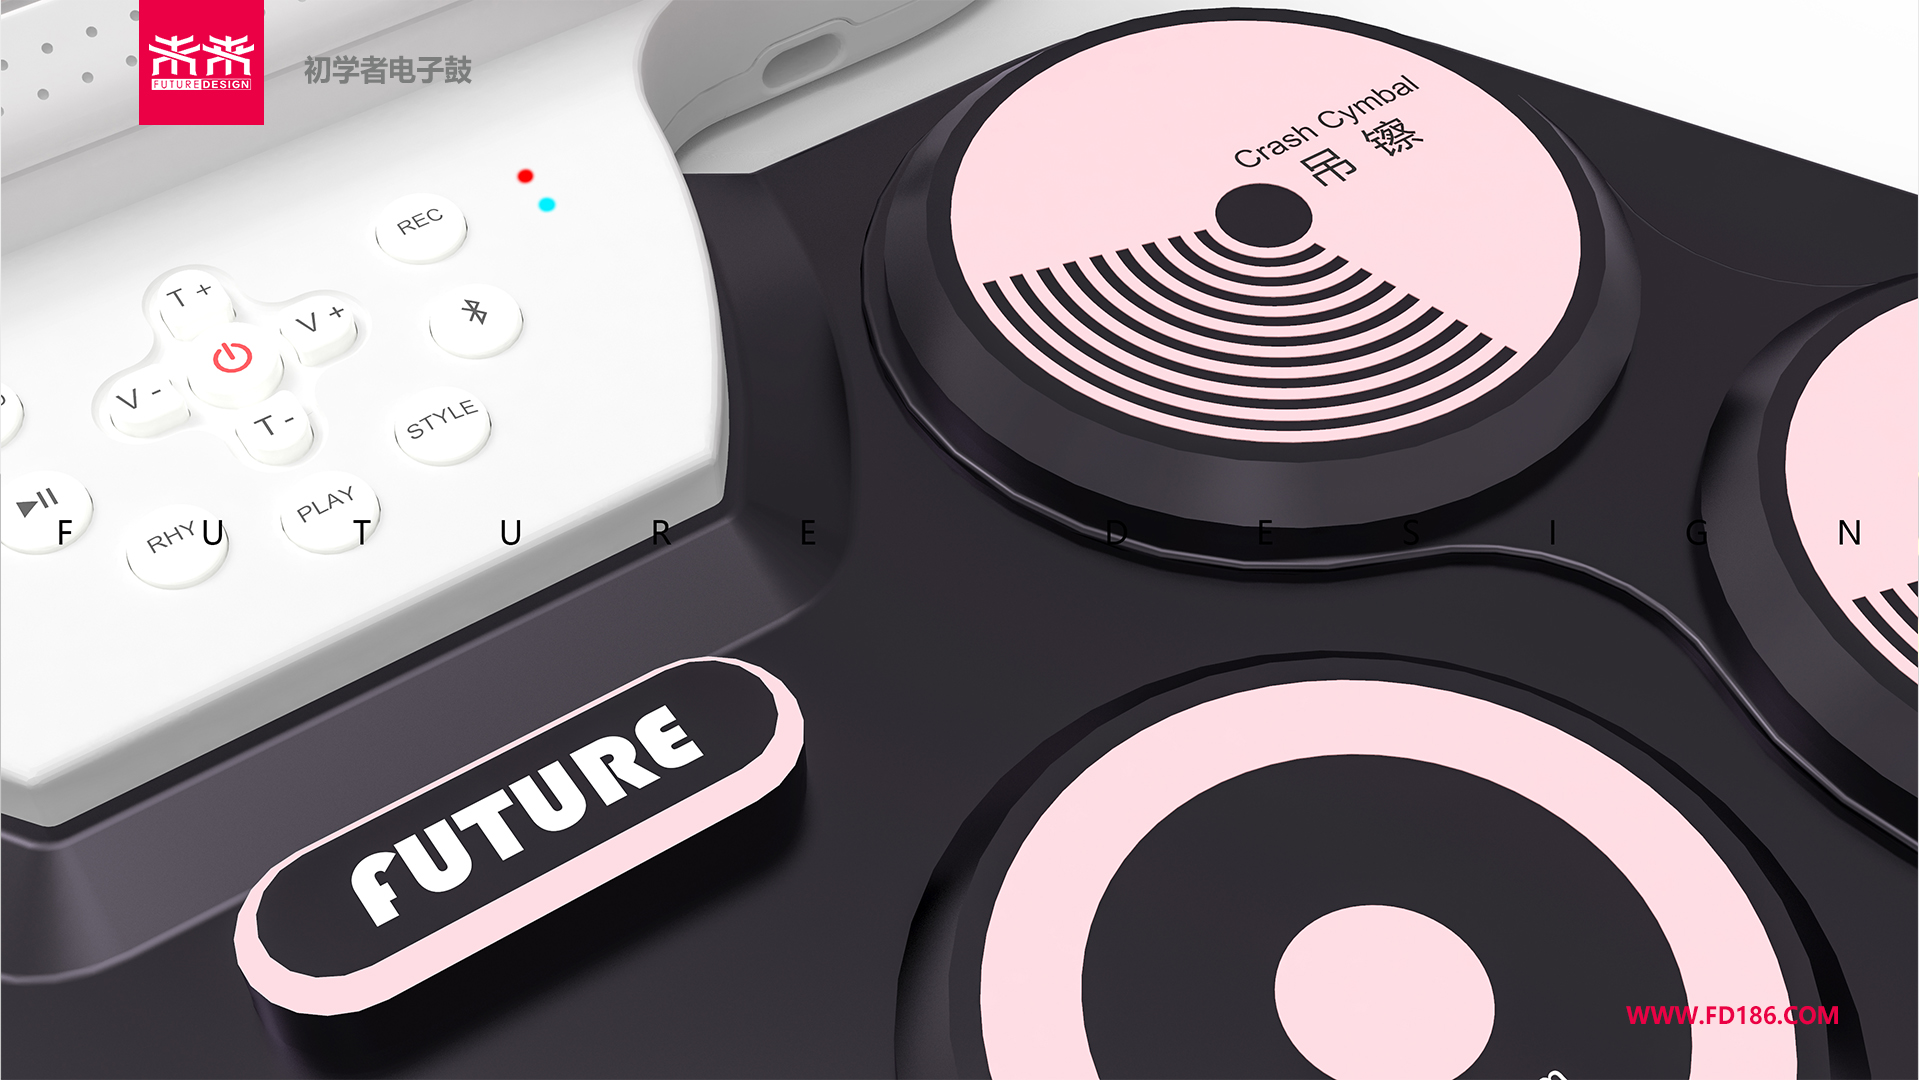 深圳工业设计公司未来设计案例-娱乐电子鼓